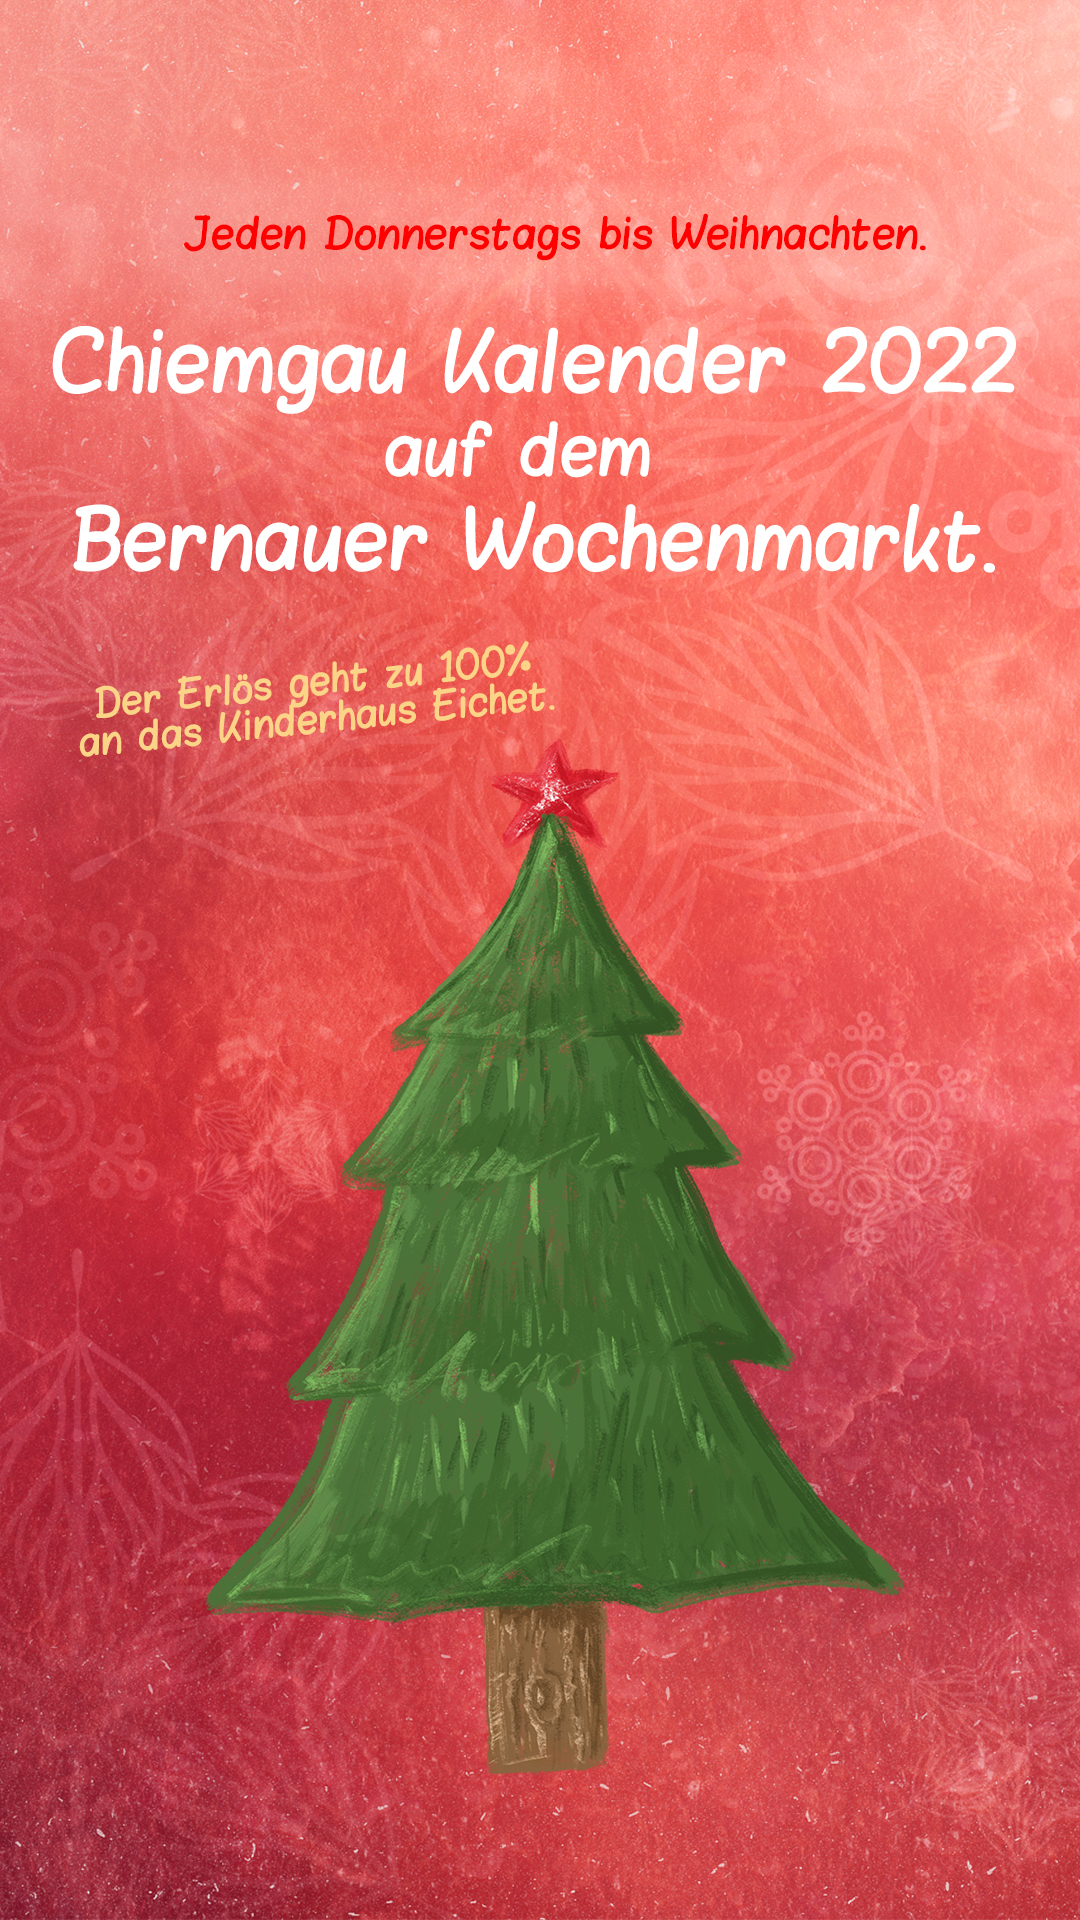 Chiemgau Kalender 2022 auf dem Wochenmarkt in Bernau 4